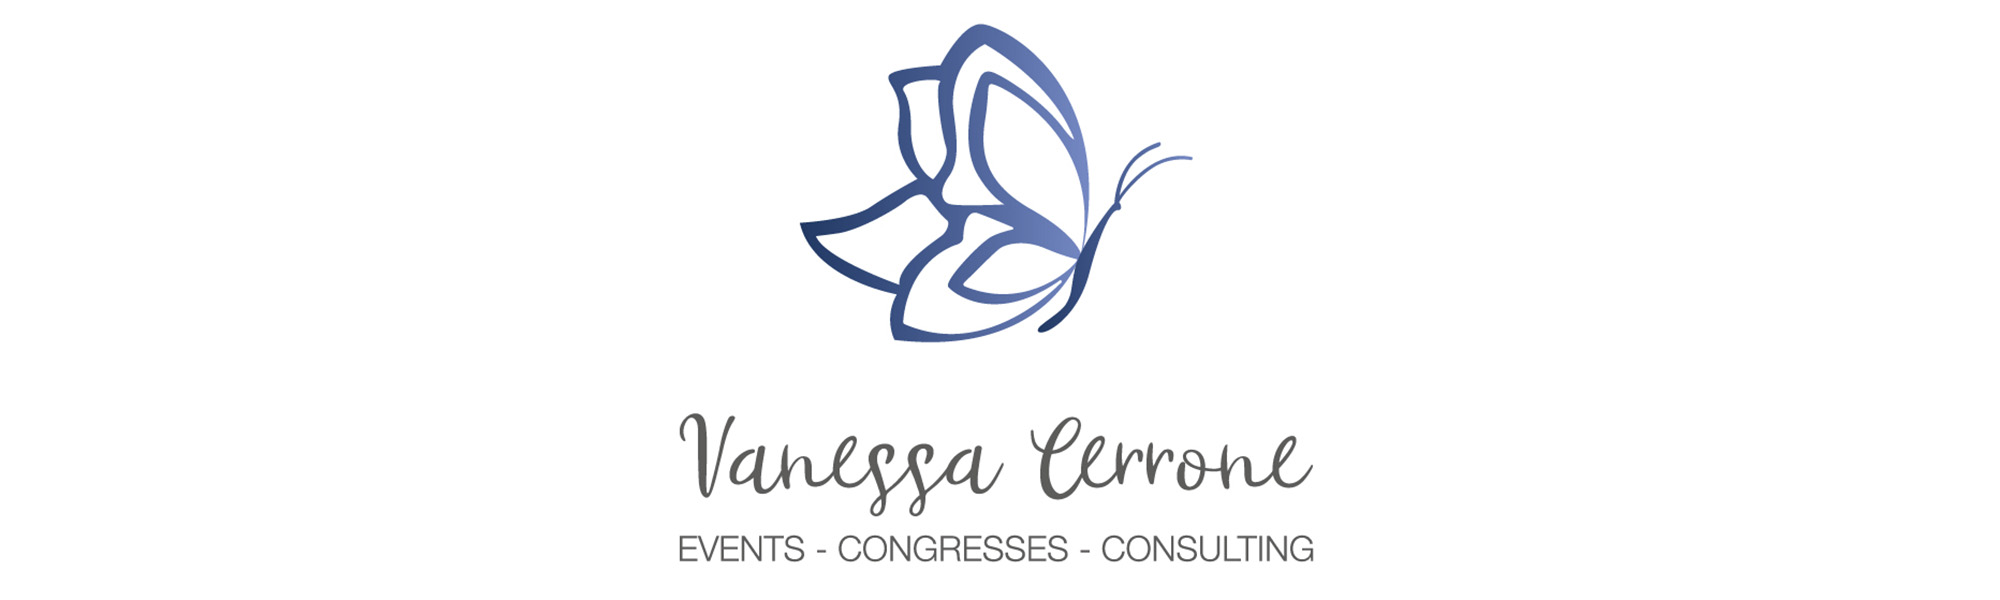 VanessaCerrone-Events